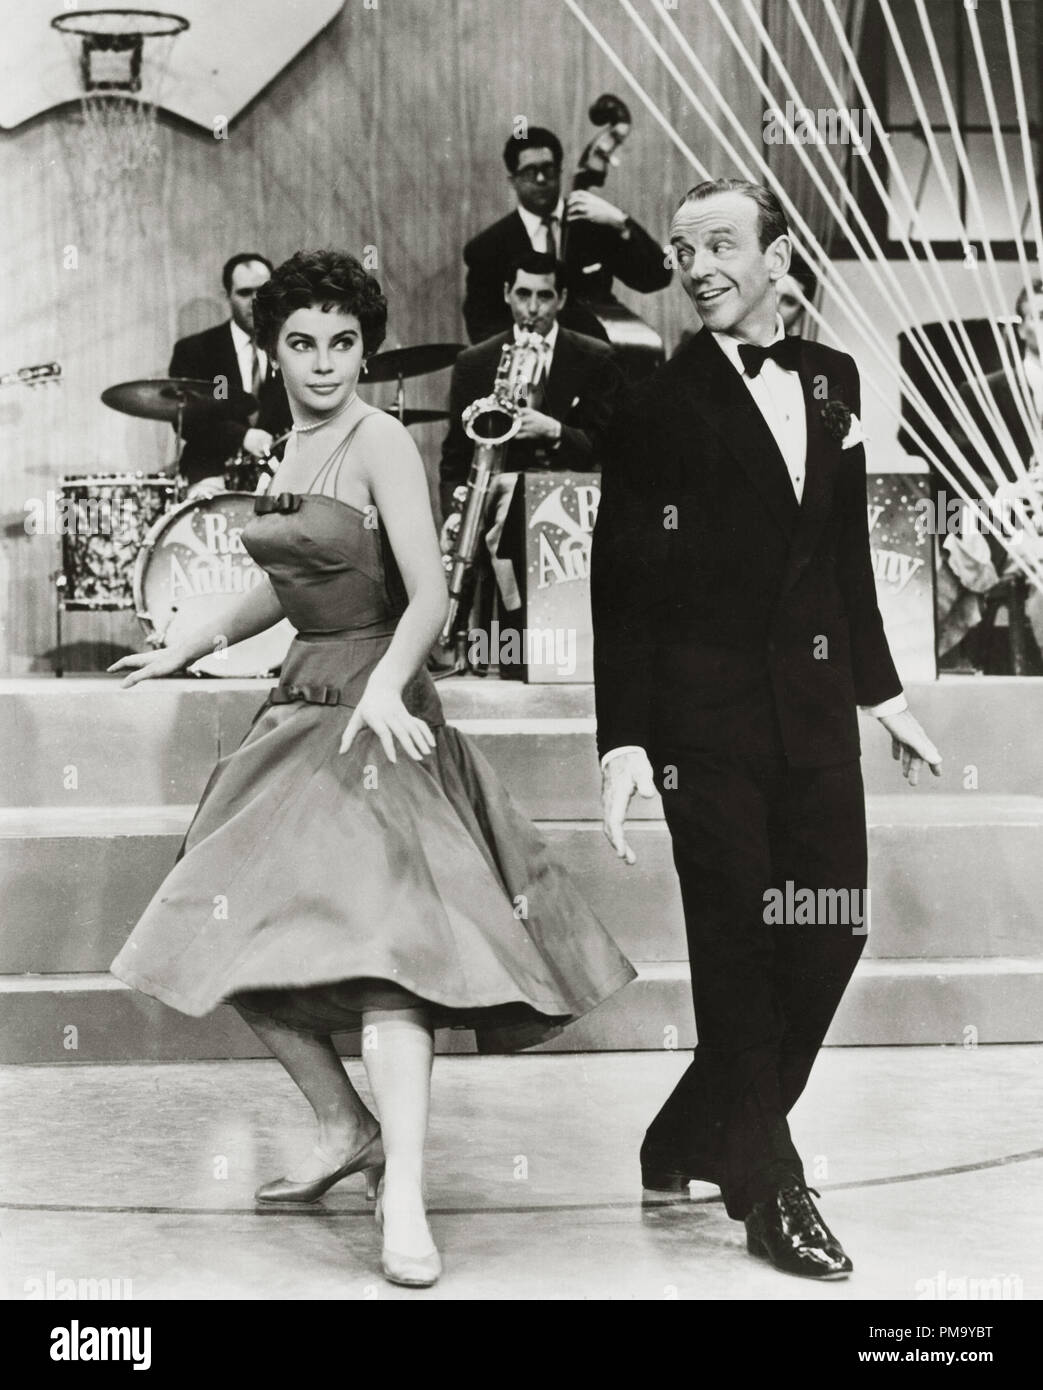 Studio Werbung noch: 'Daddy Lange Beine "Fred Astaire, Leslie Caron 1955 Twentieth Century Fox Datei Referenz # 31780 045 Stockfoto